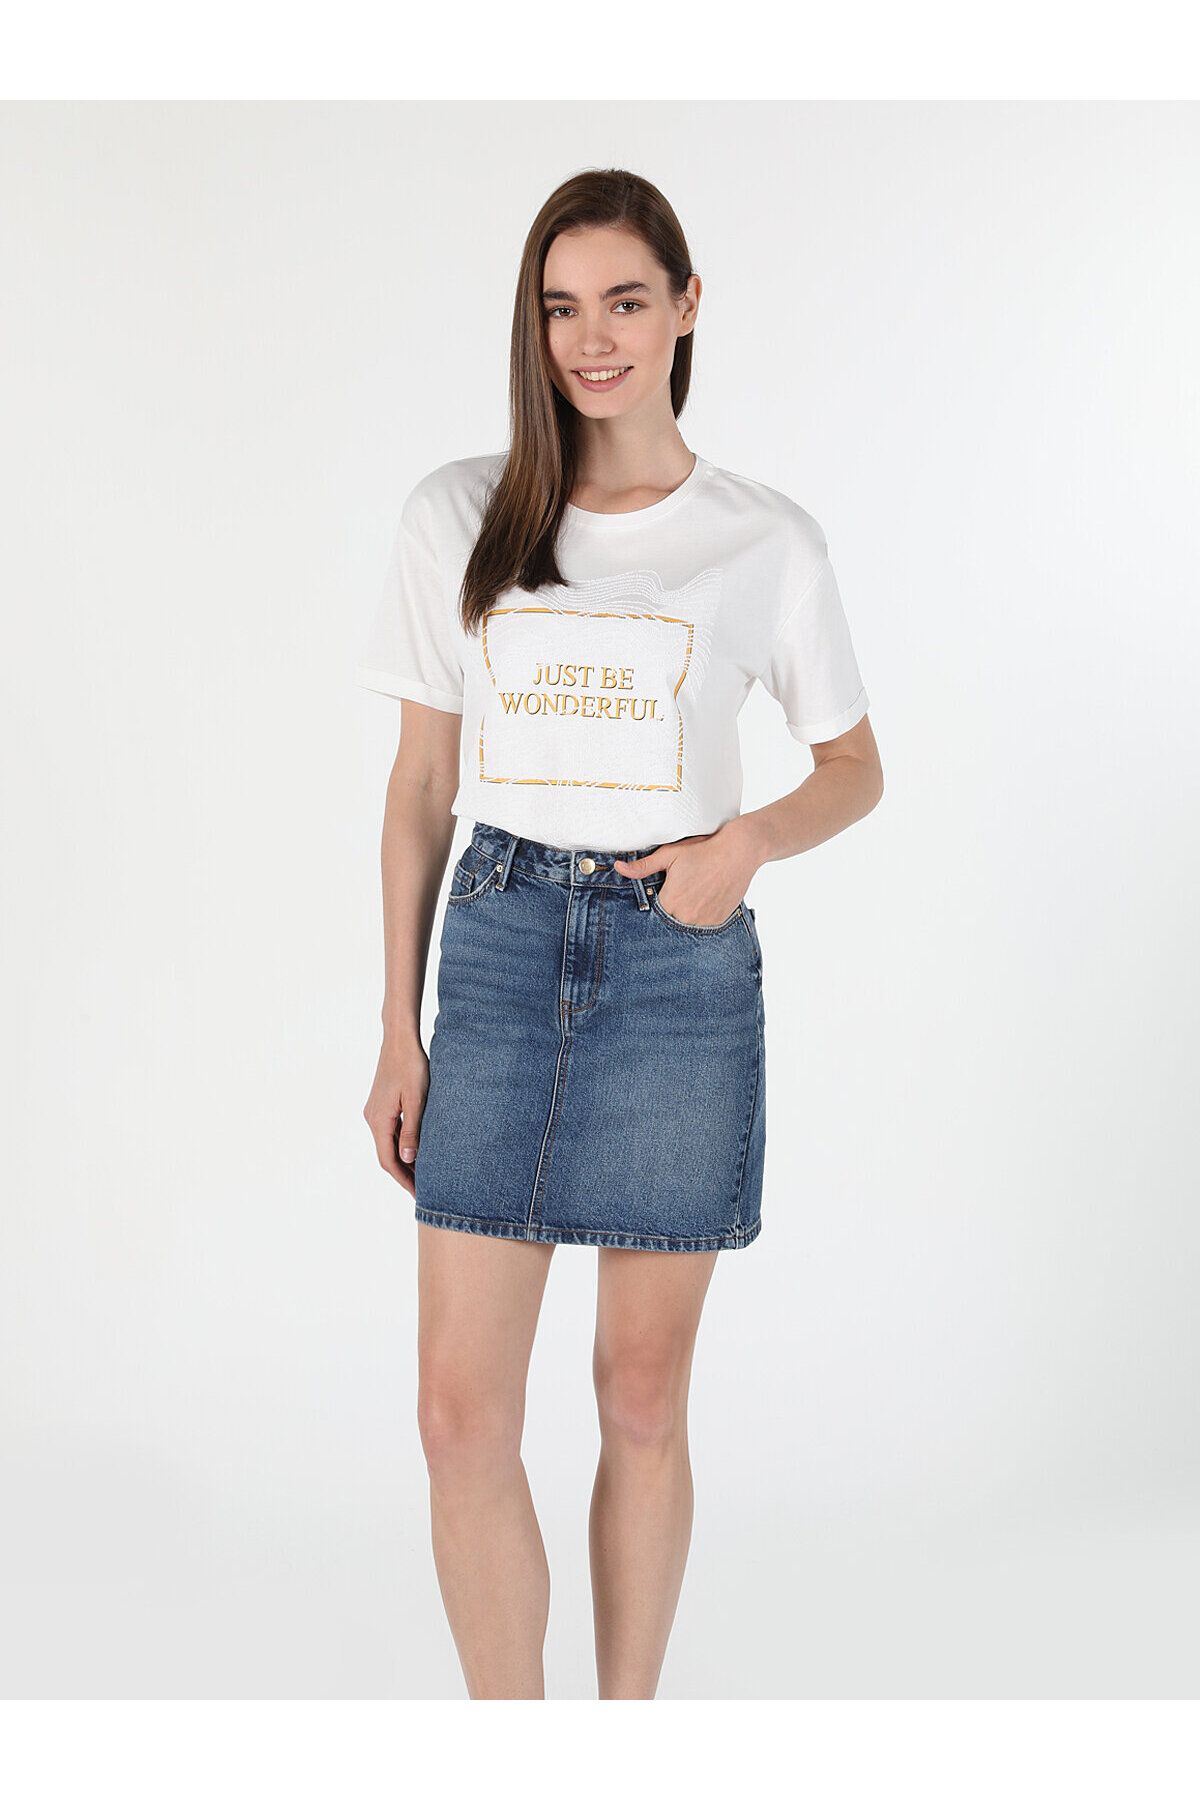 Colin’s تی شرت آستین کوتاه سفید زنانه چاپ شده با یقه Comfort Fit